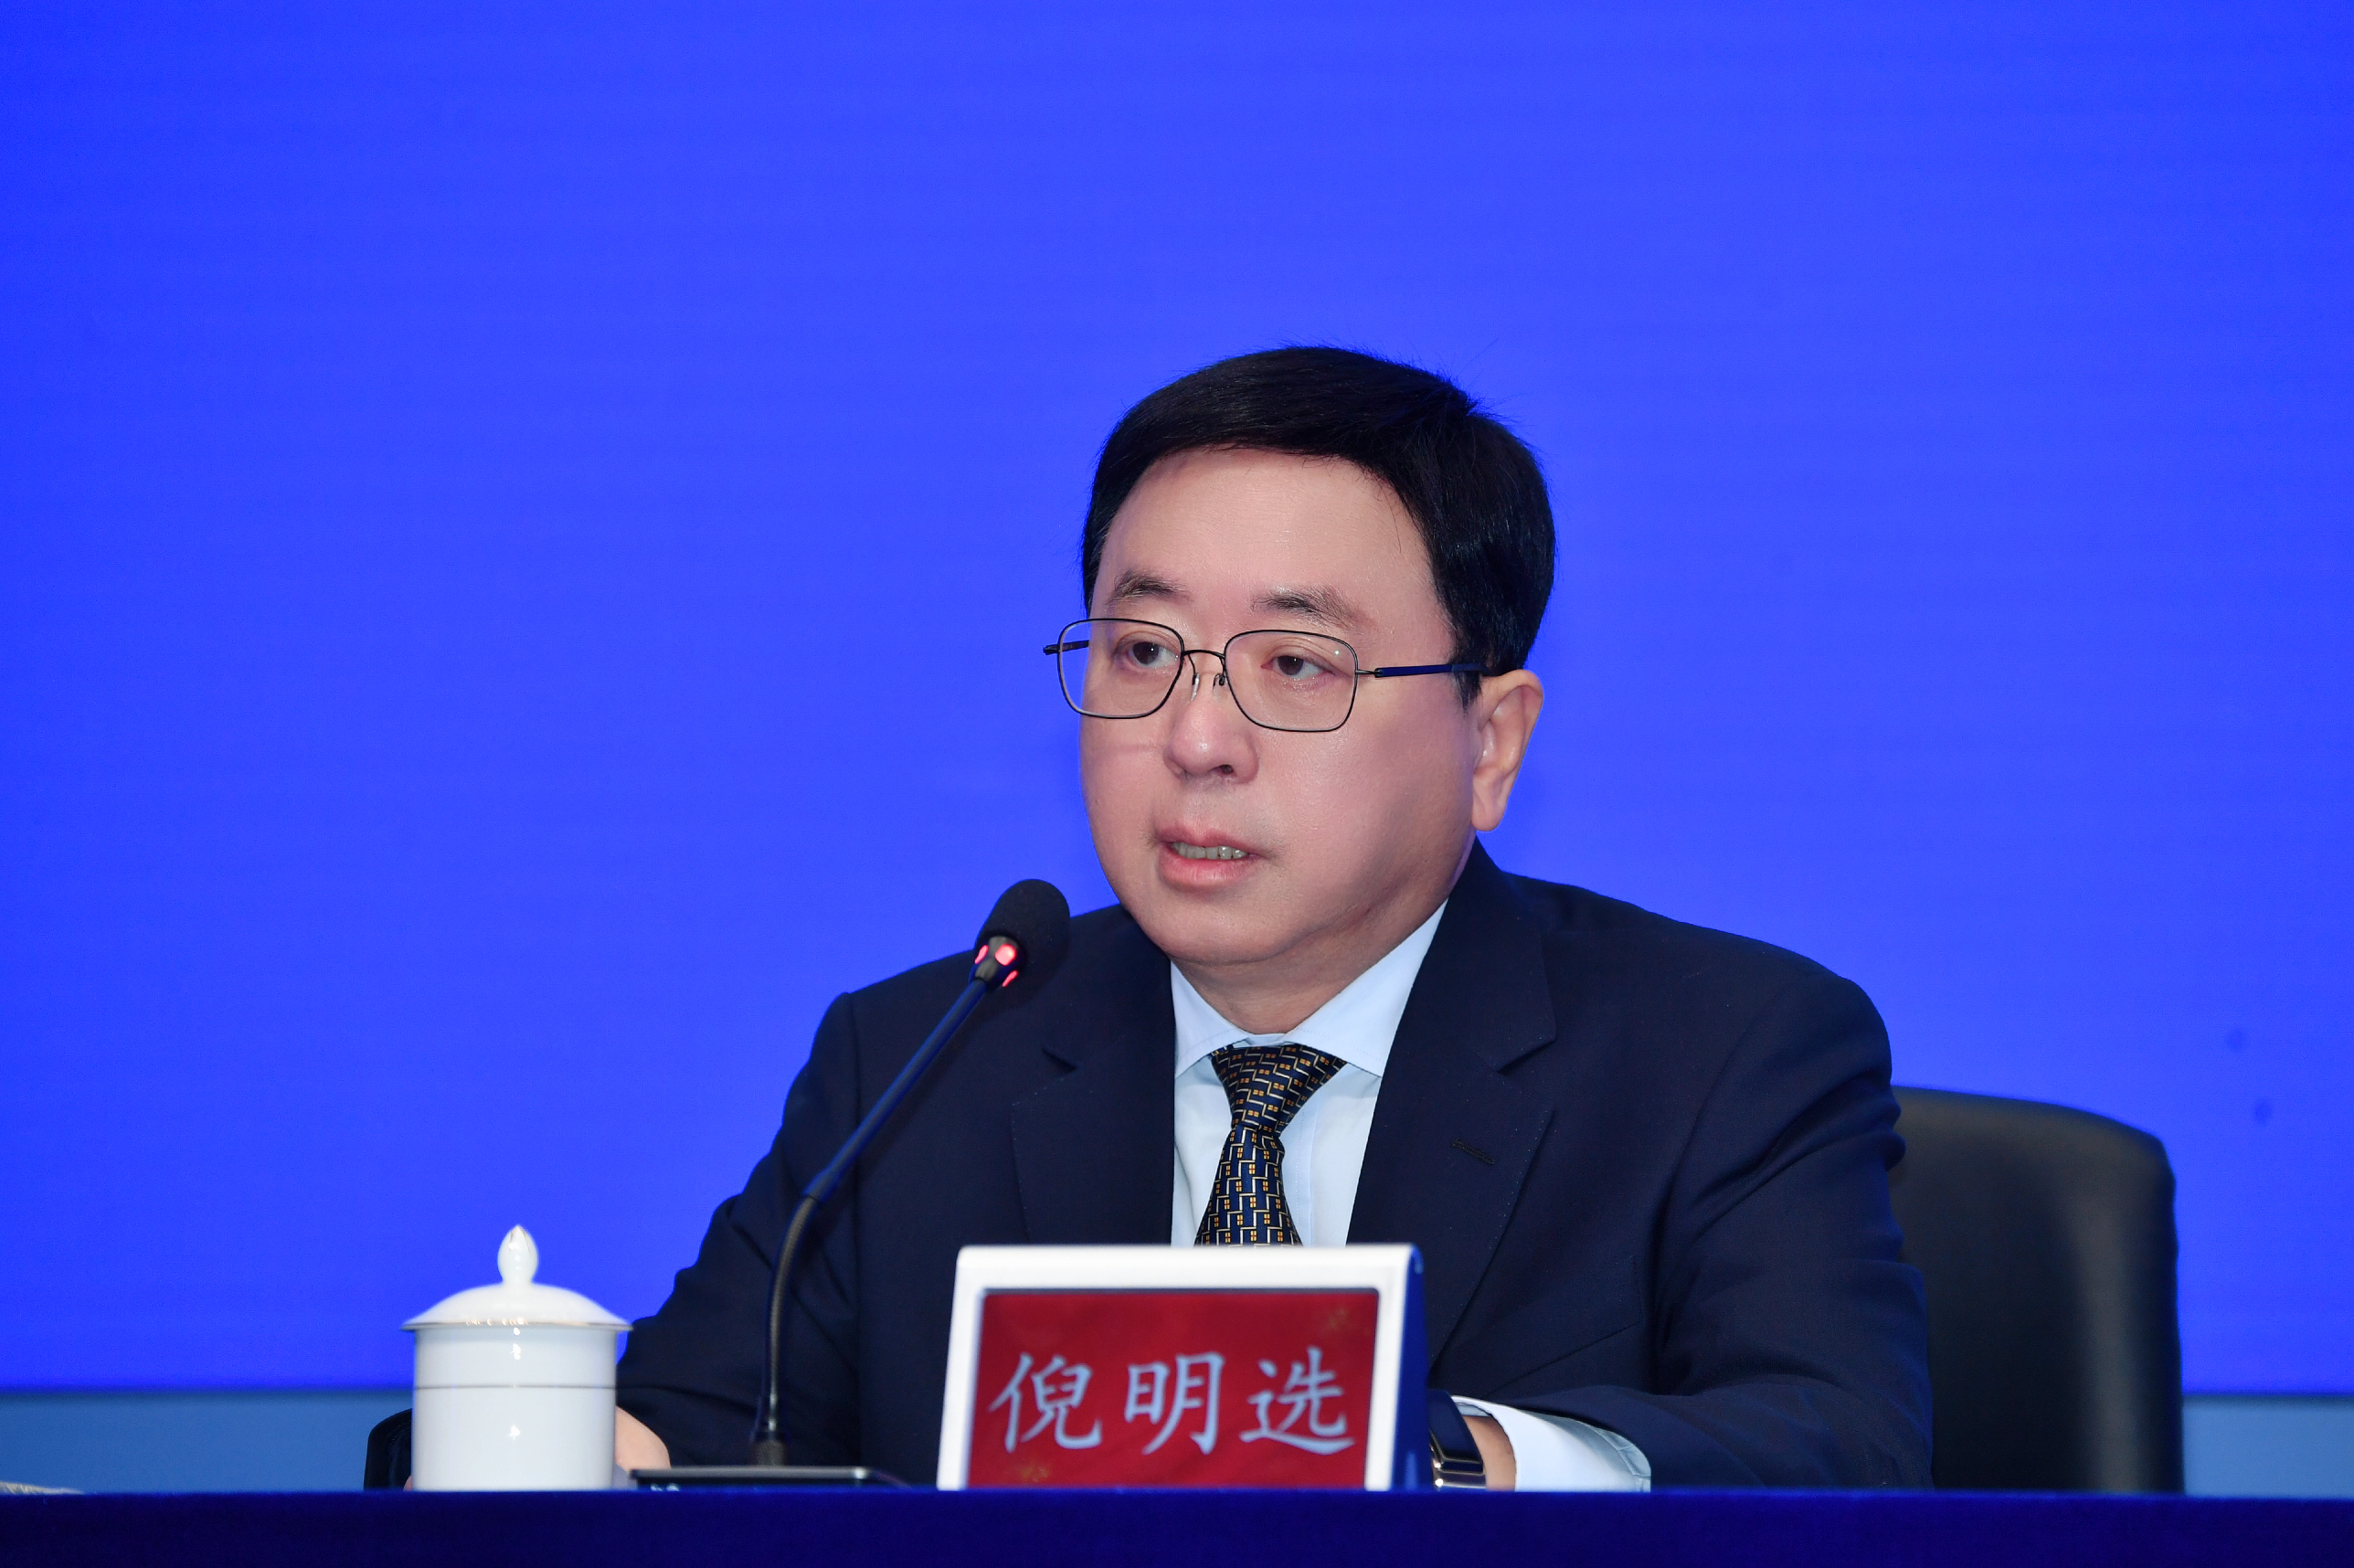 港科大（廣州）校長倪明選教授表示本年度接到3,000多份報讀申請。